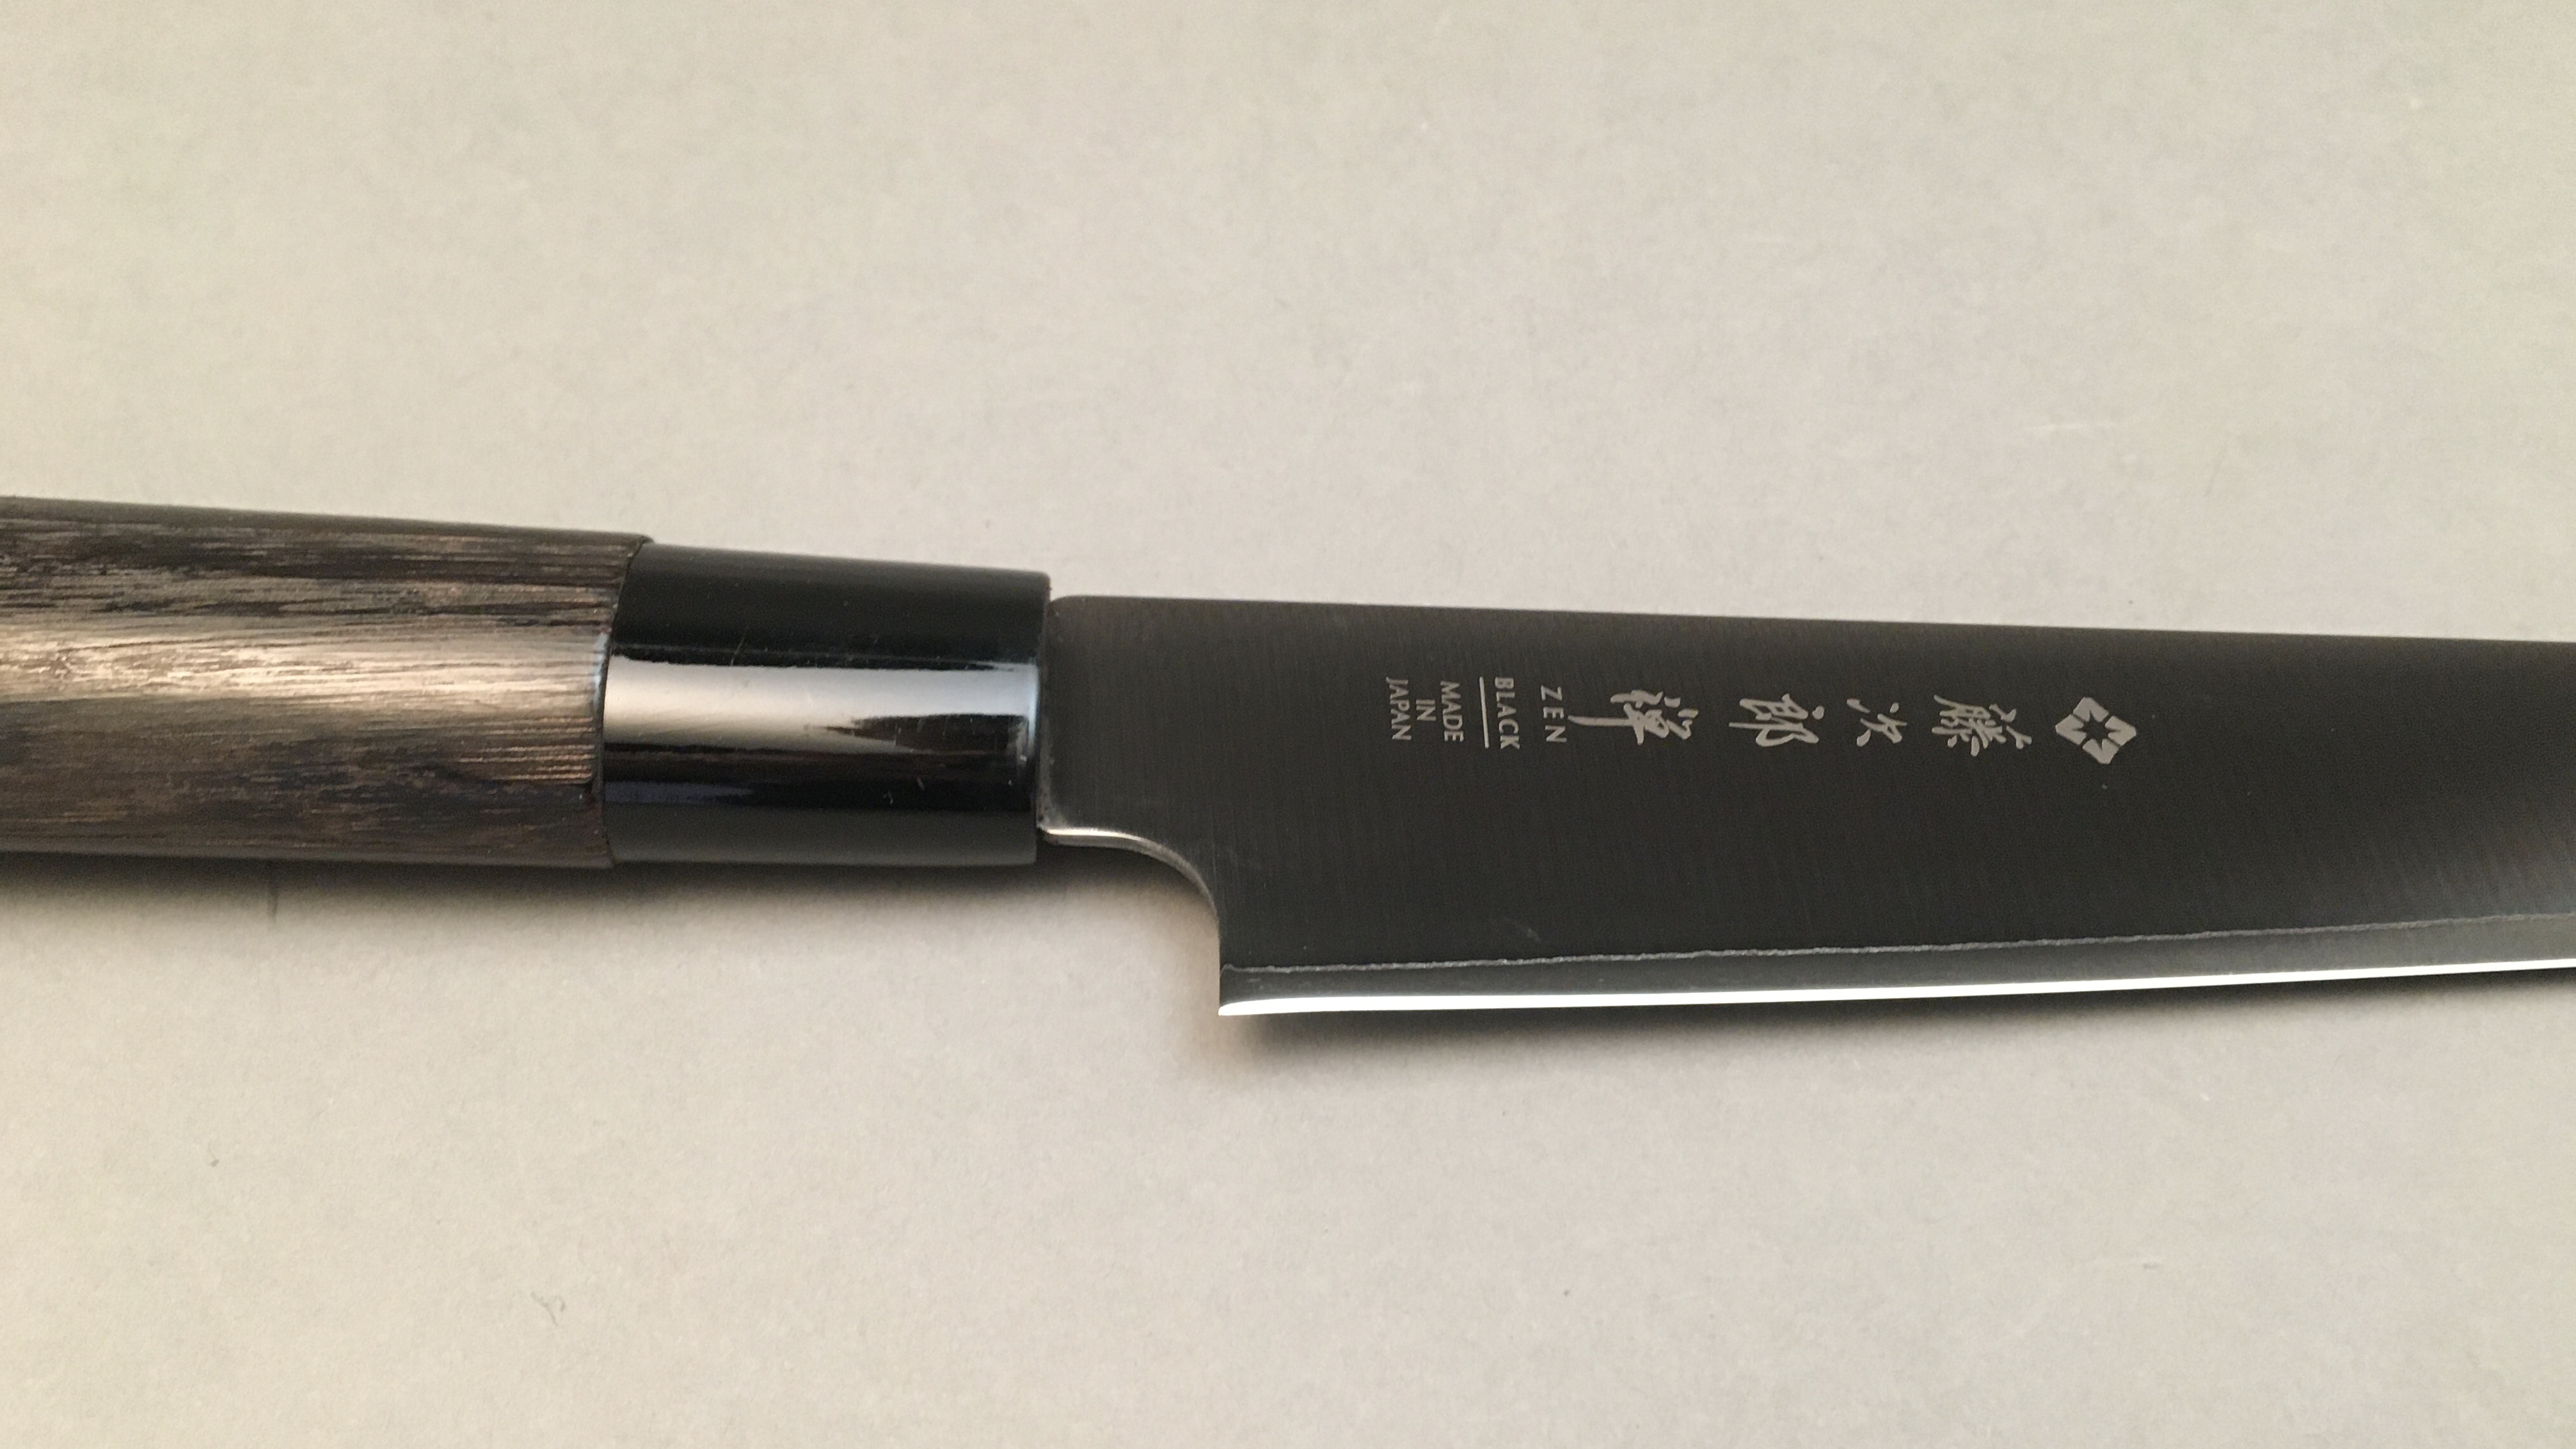 Couteau japonais Zen Black Tojiro Trancheur 21 cm